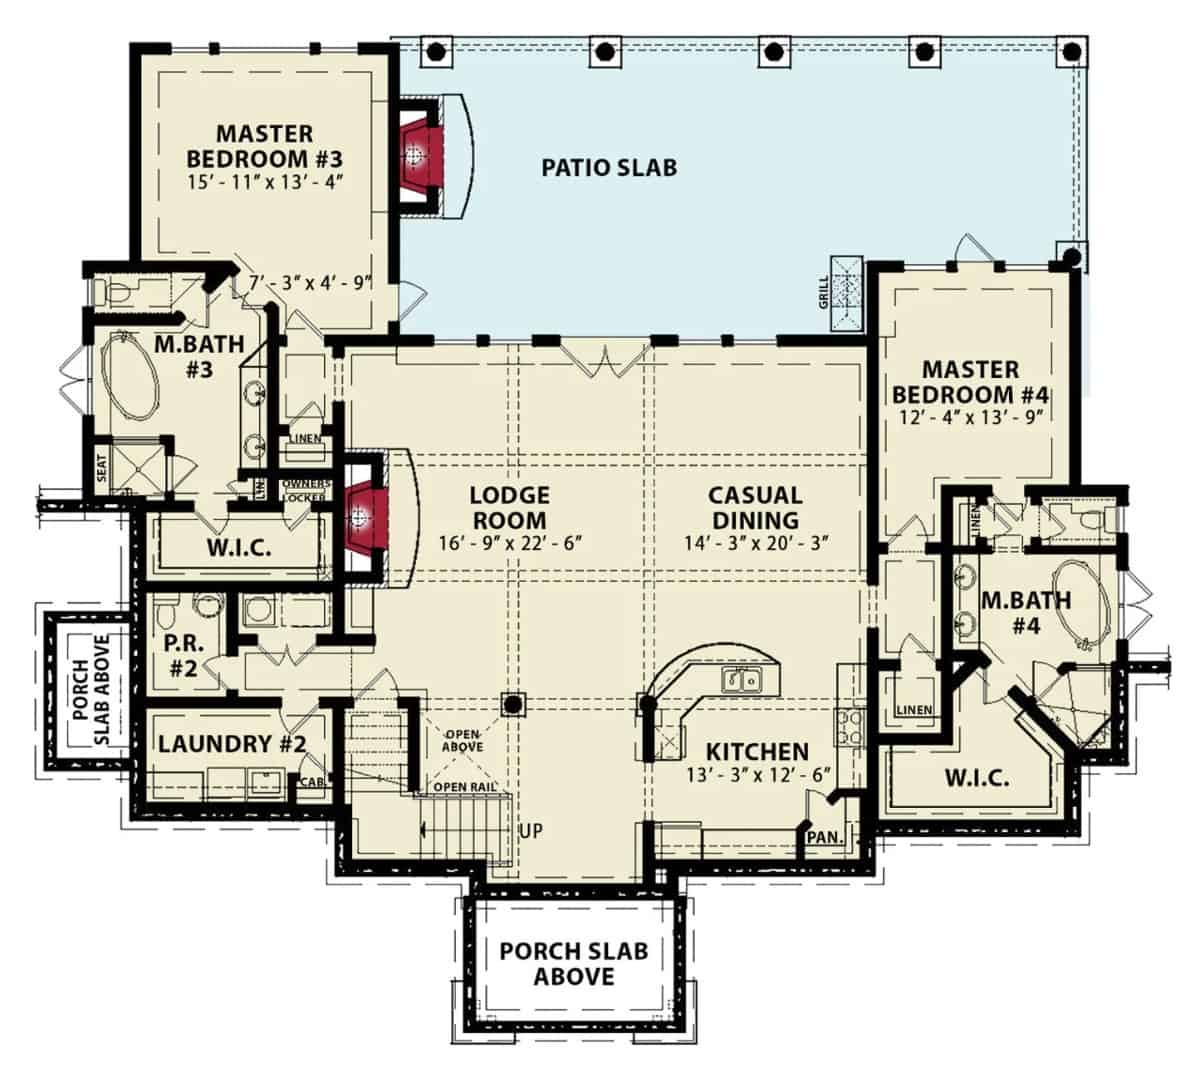 底层平面图与旅馆的房间,休闲餐饮、厨房、洗衣,和两个额外的卧室套房。